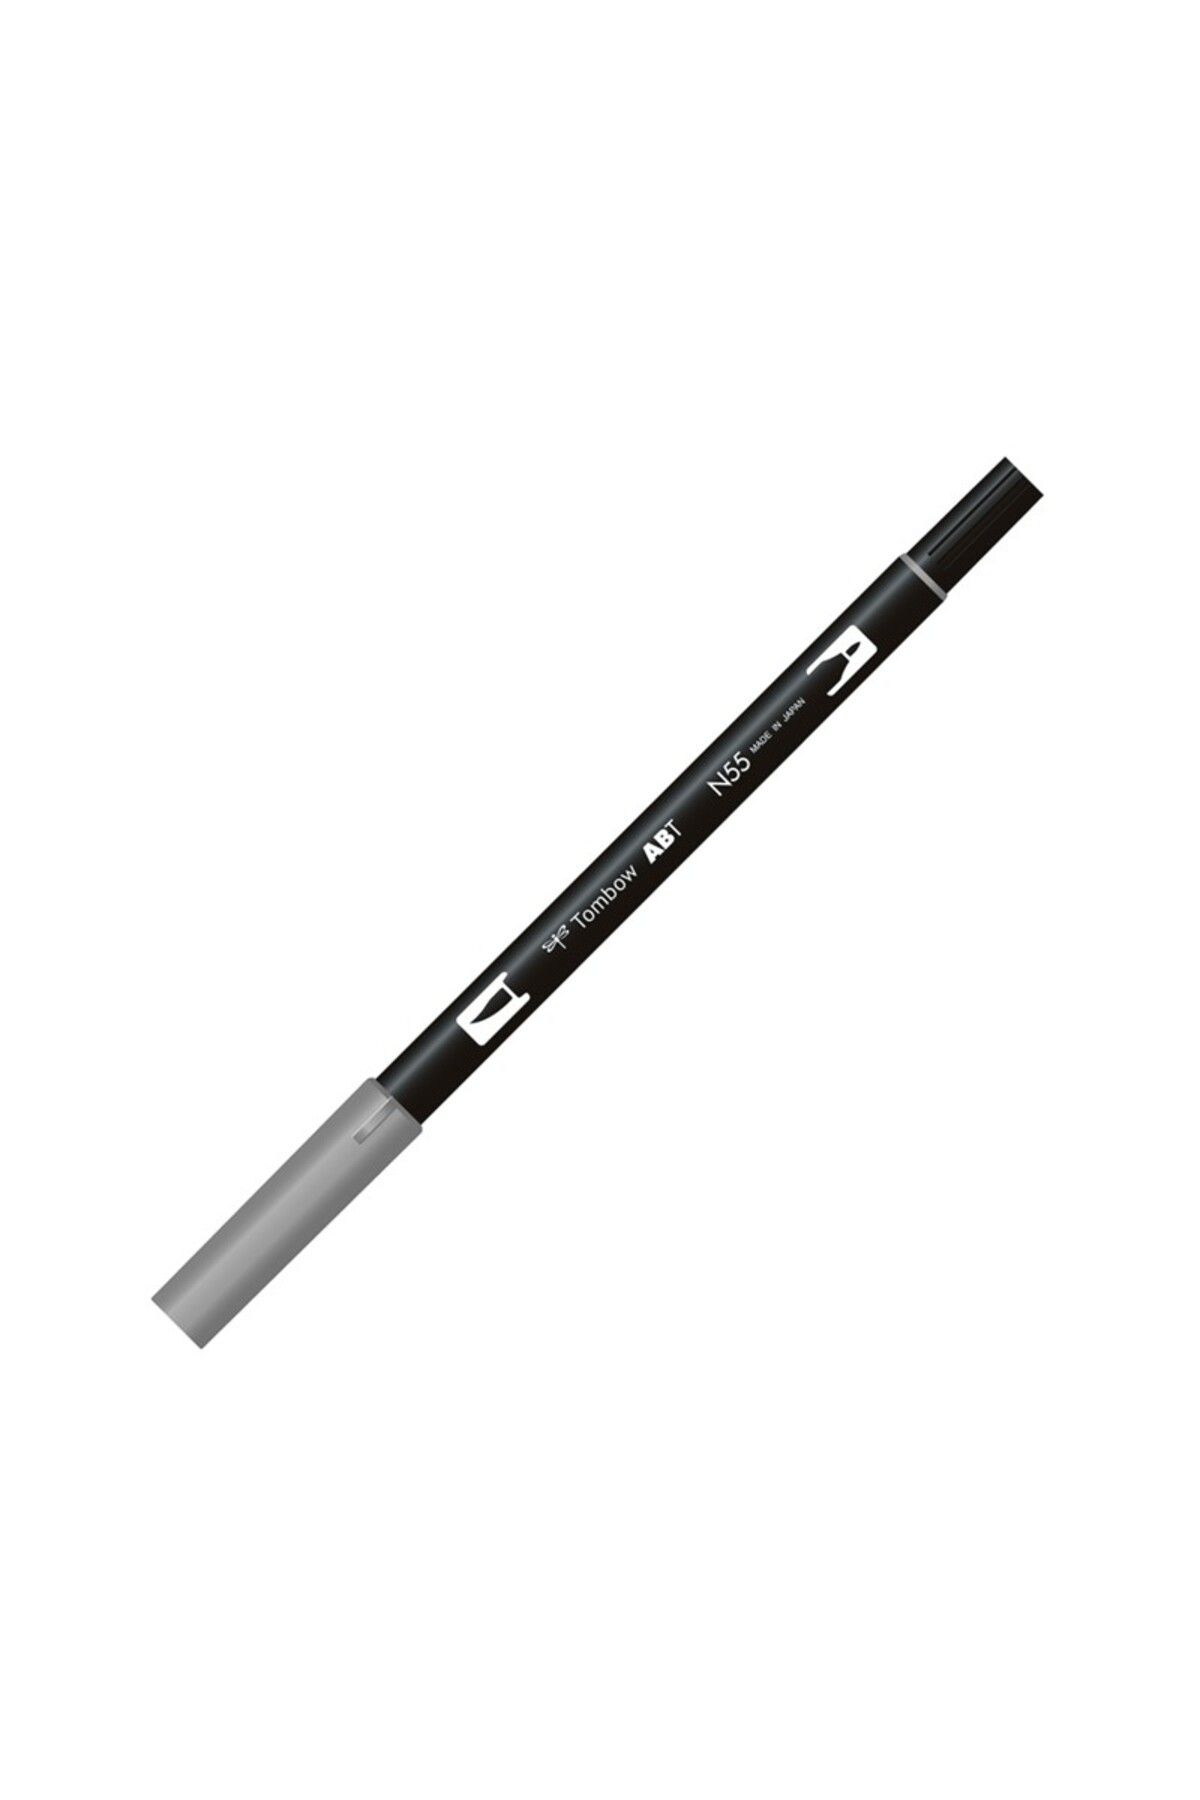 Tombow Ab-t Dual Brush Pen Grafik Kalemi Cool Gray 7 N55